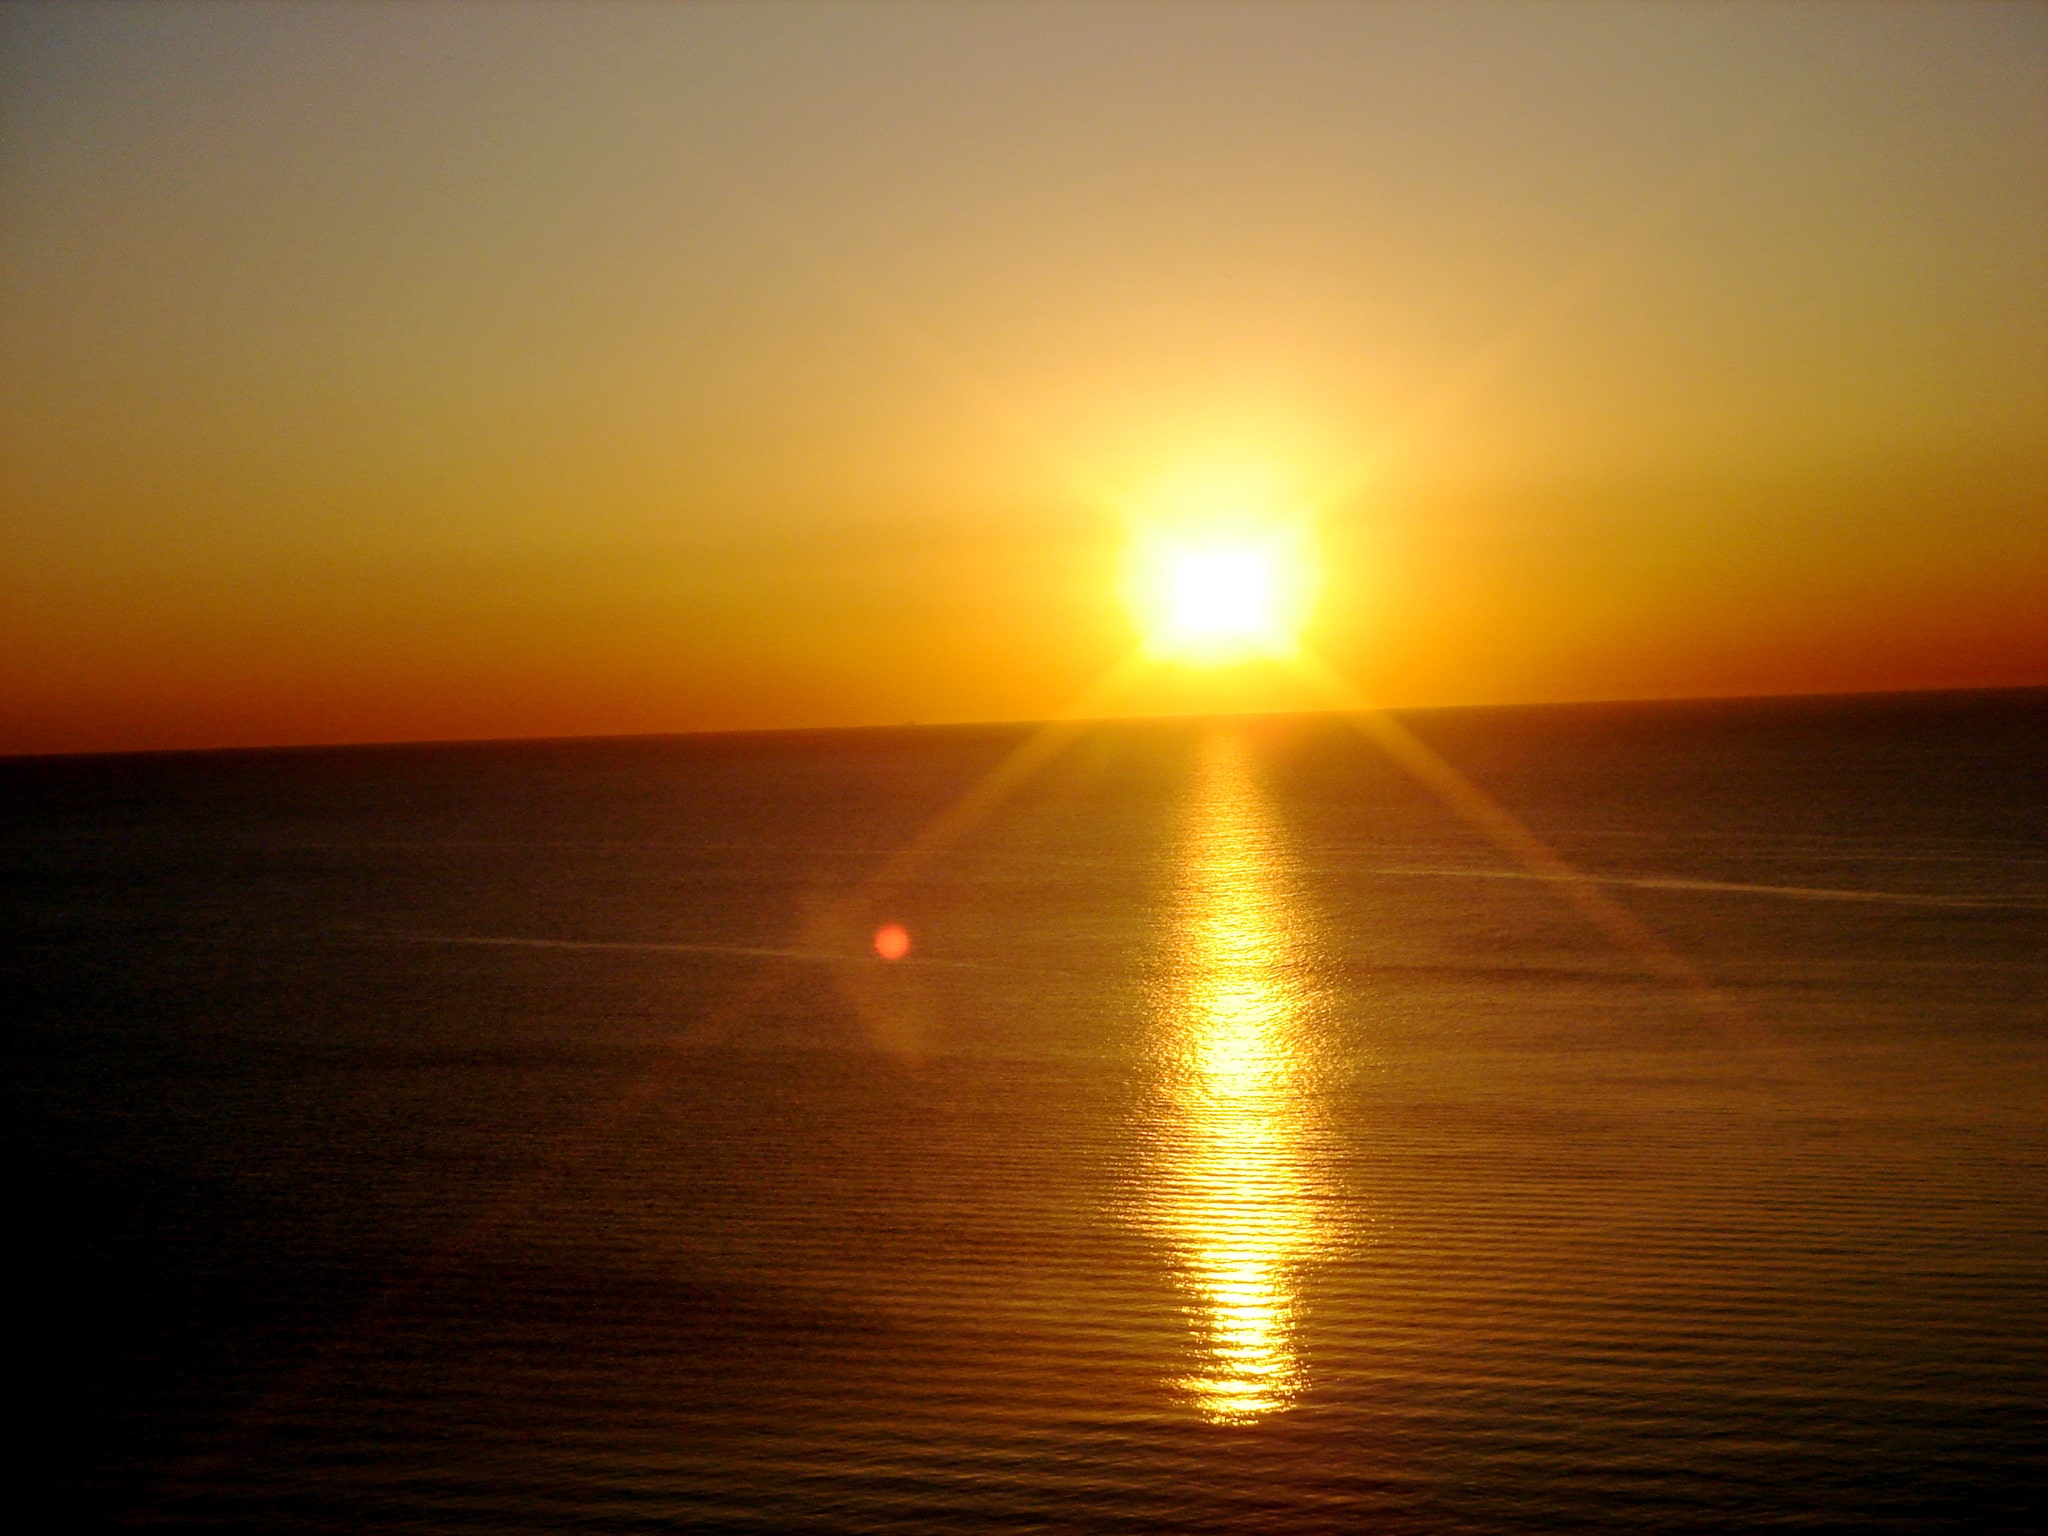 Ibiza Sunset